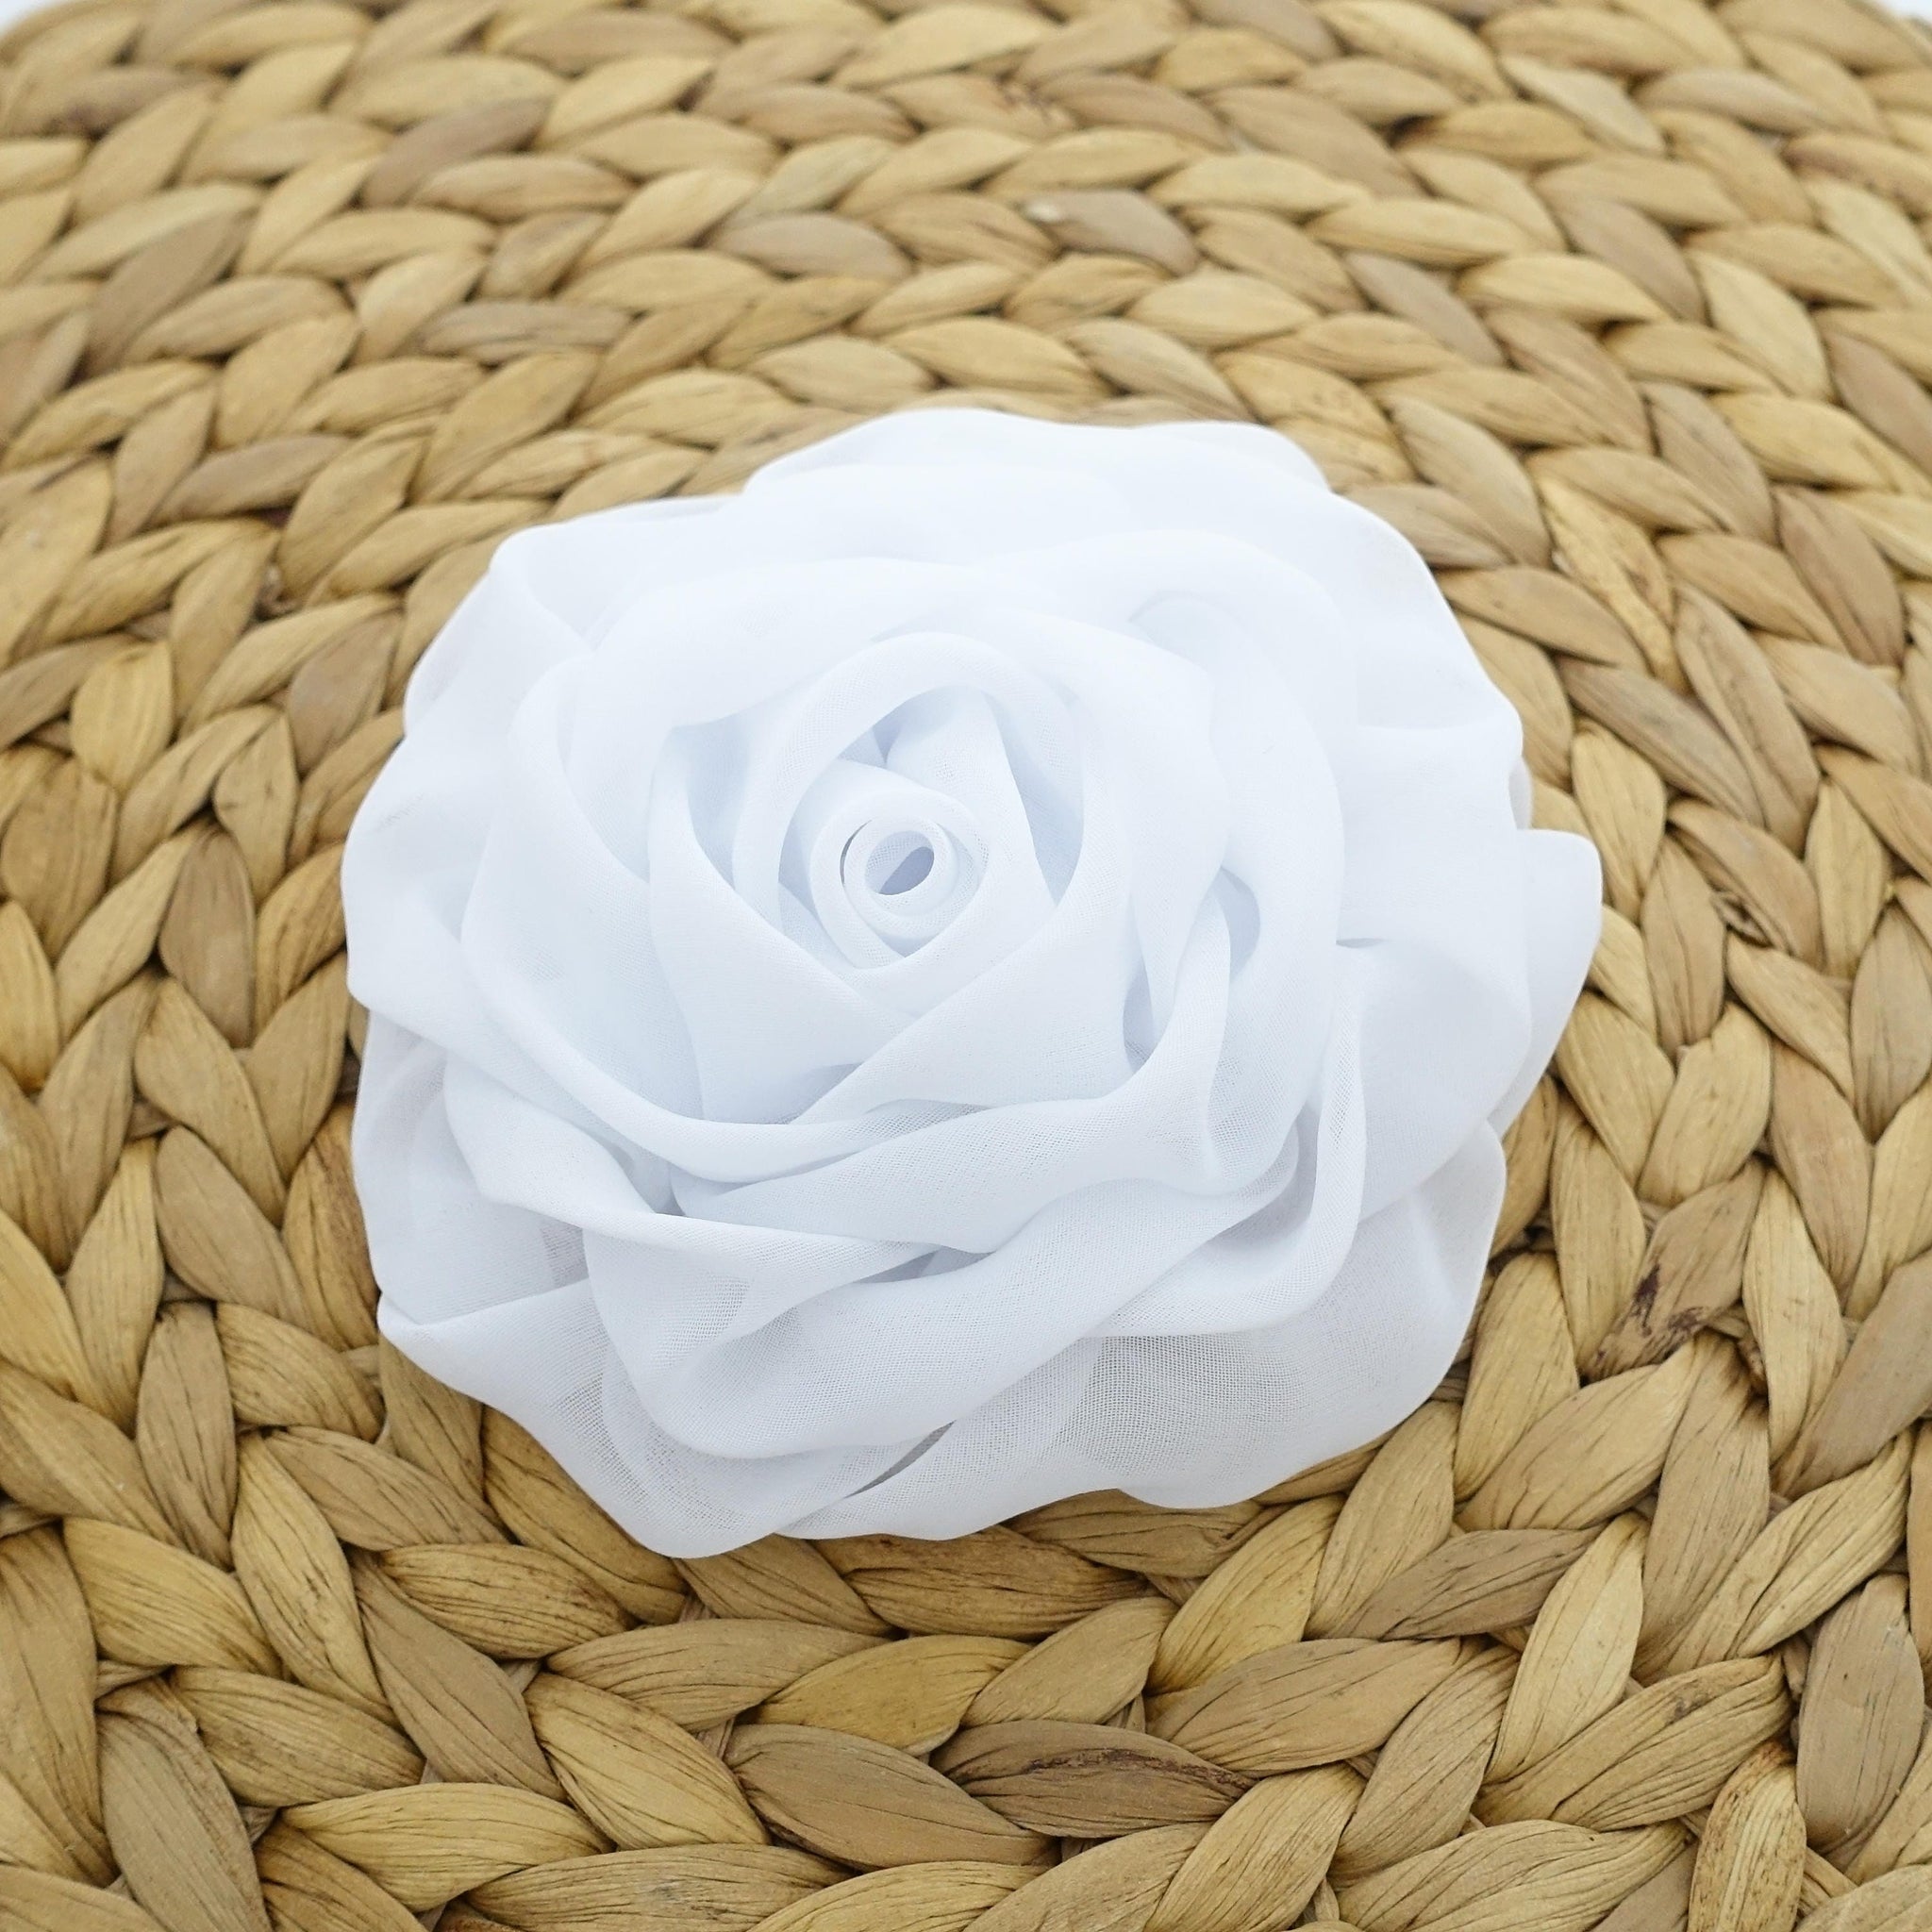 VeryShine 4.33 / Chiffon White Rose Flower Hair Clip Women Flower Corsage Brooch Accessories